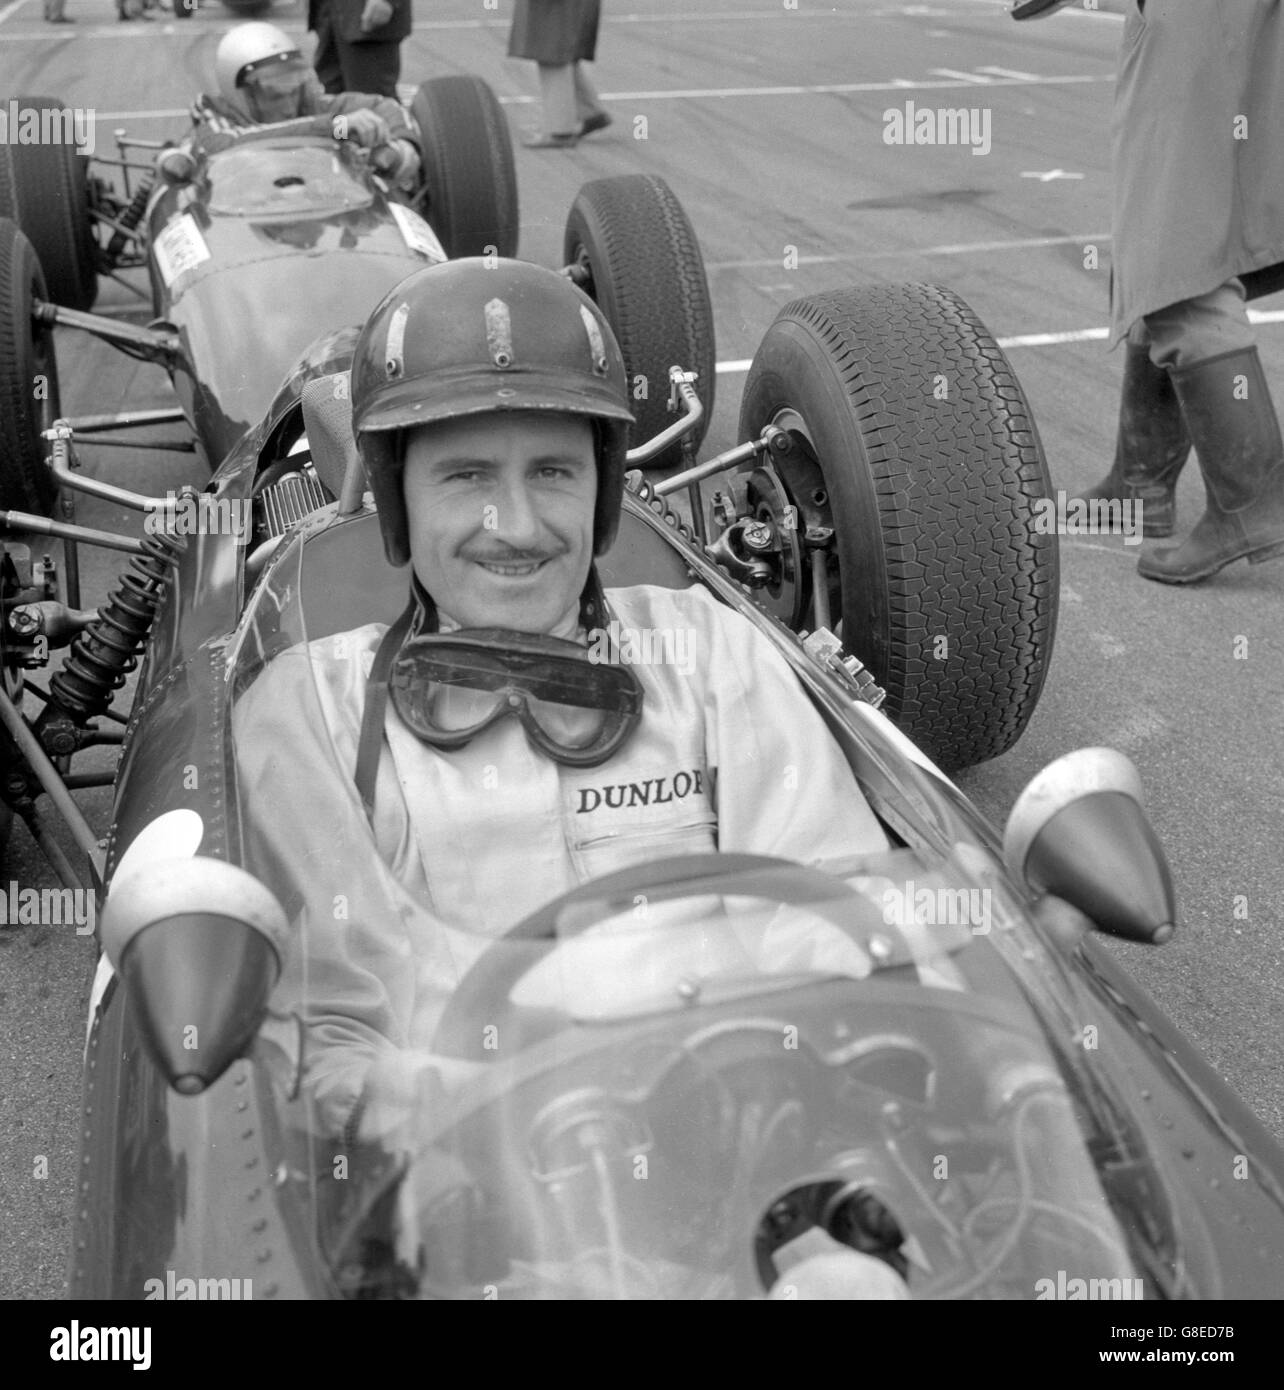 Motorsport - Formel 1 - Graham Hill. Der britische Fahrer Graham Hill (BRM), der beim jüngsten Grand Prix der Niederlande vor Jack Brabham den zweiten Platz belegte. Stockfoto